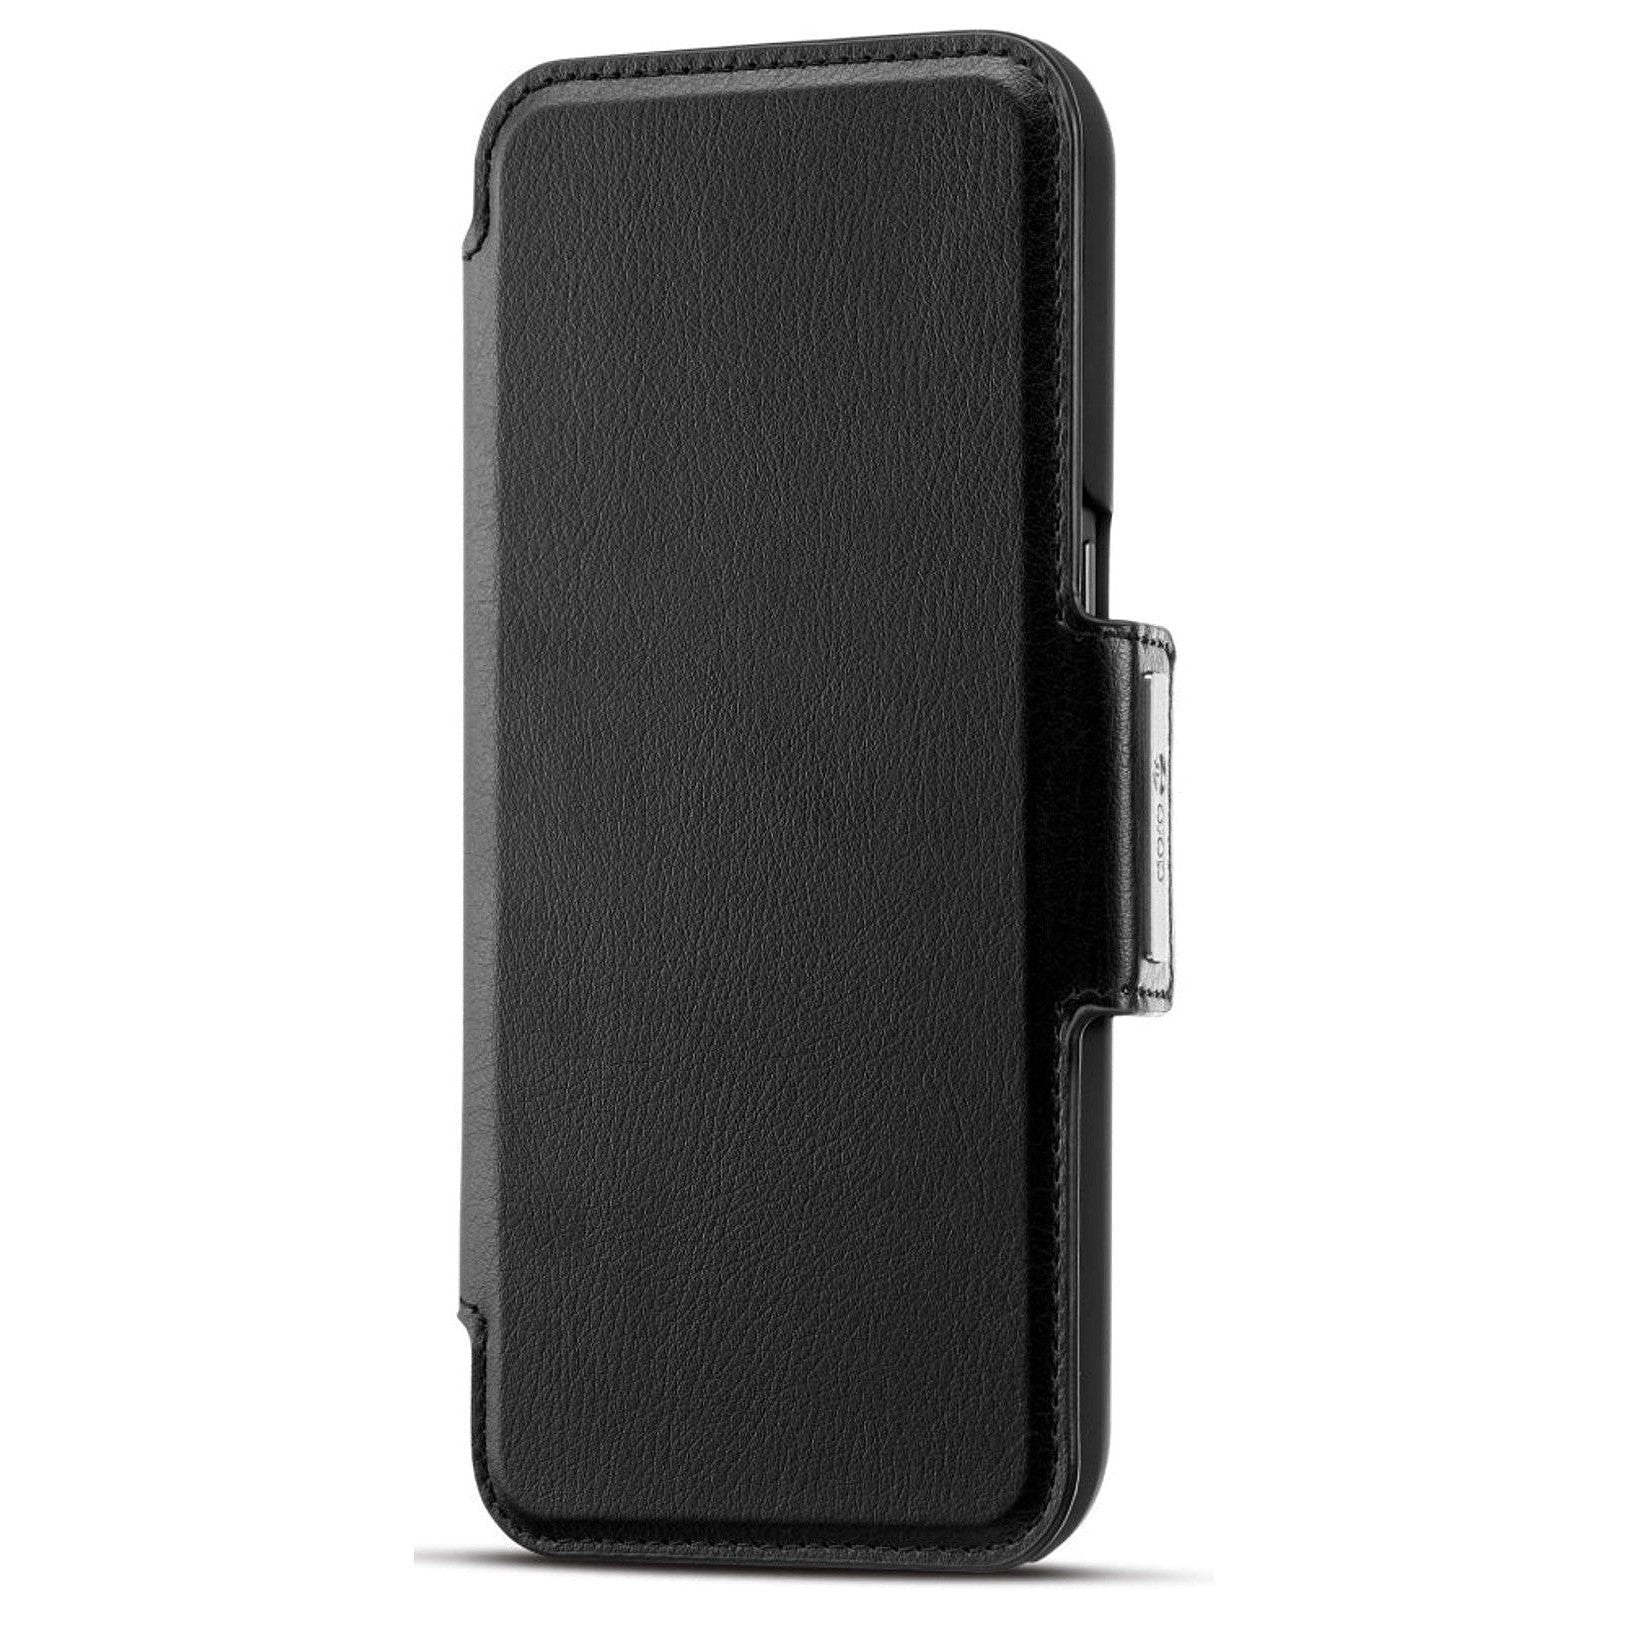 Hulpmedi.nl Wallet Case voor Smartphone 8100 Zwart